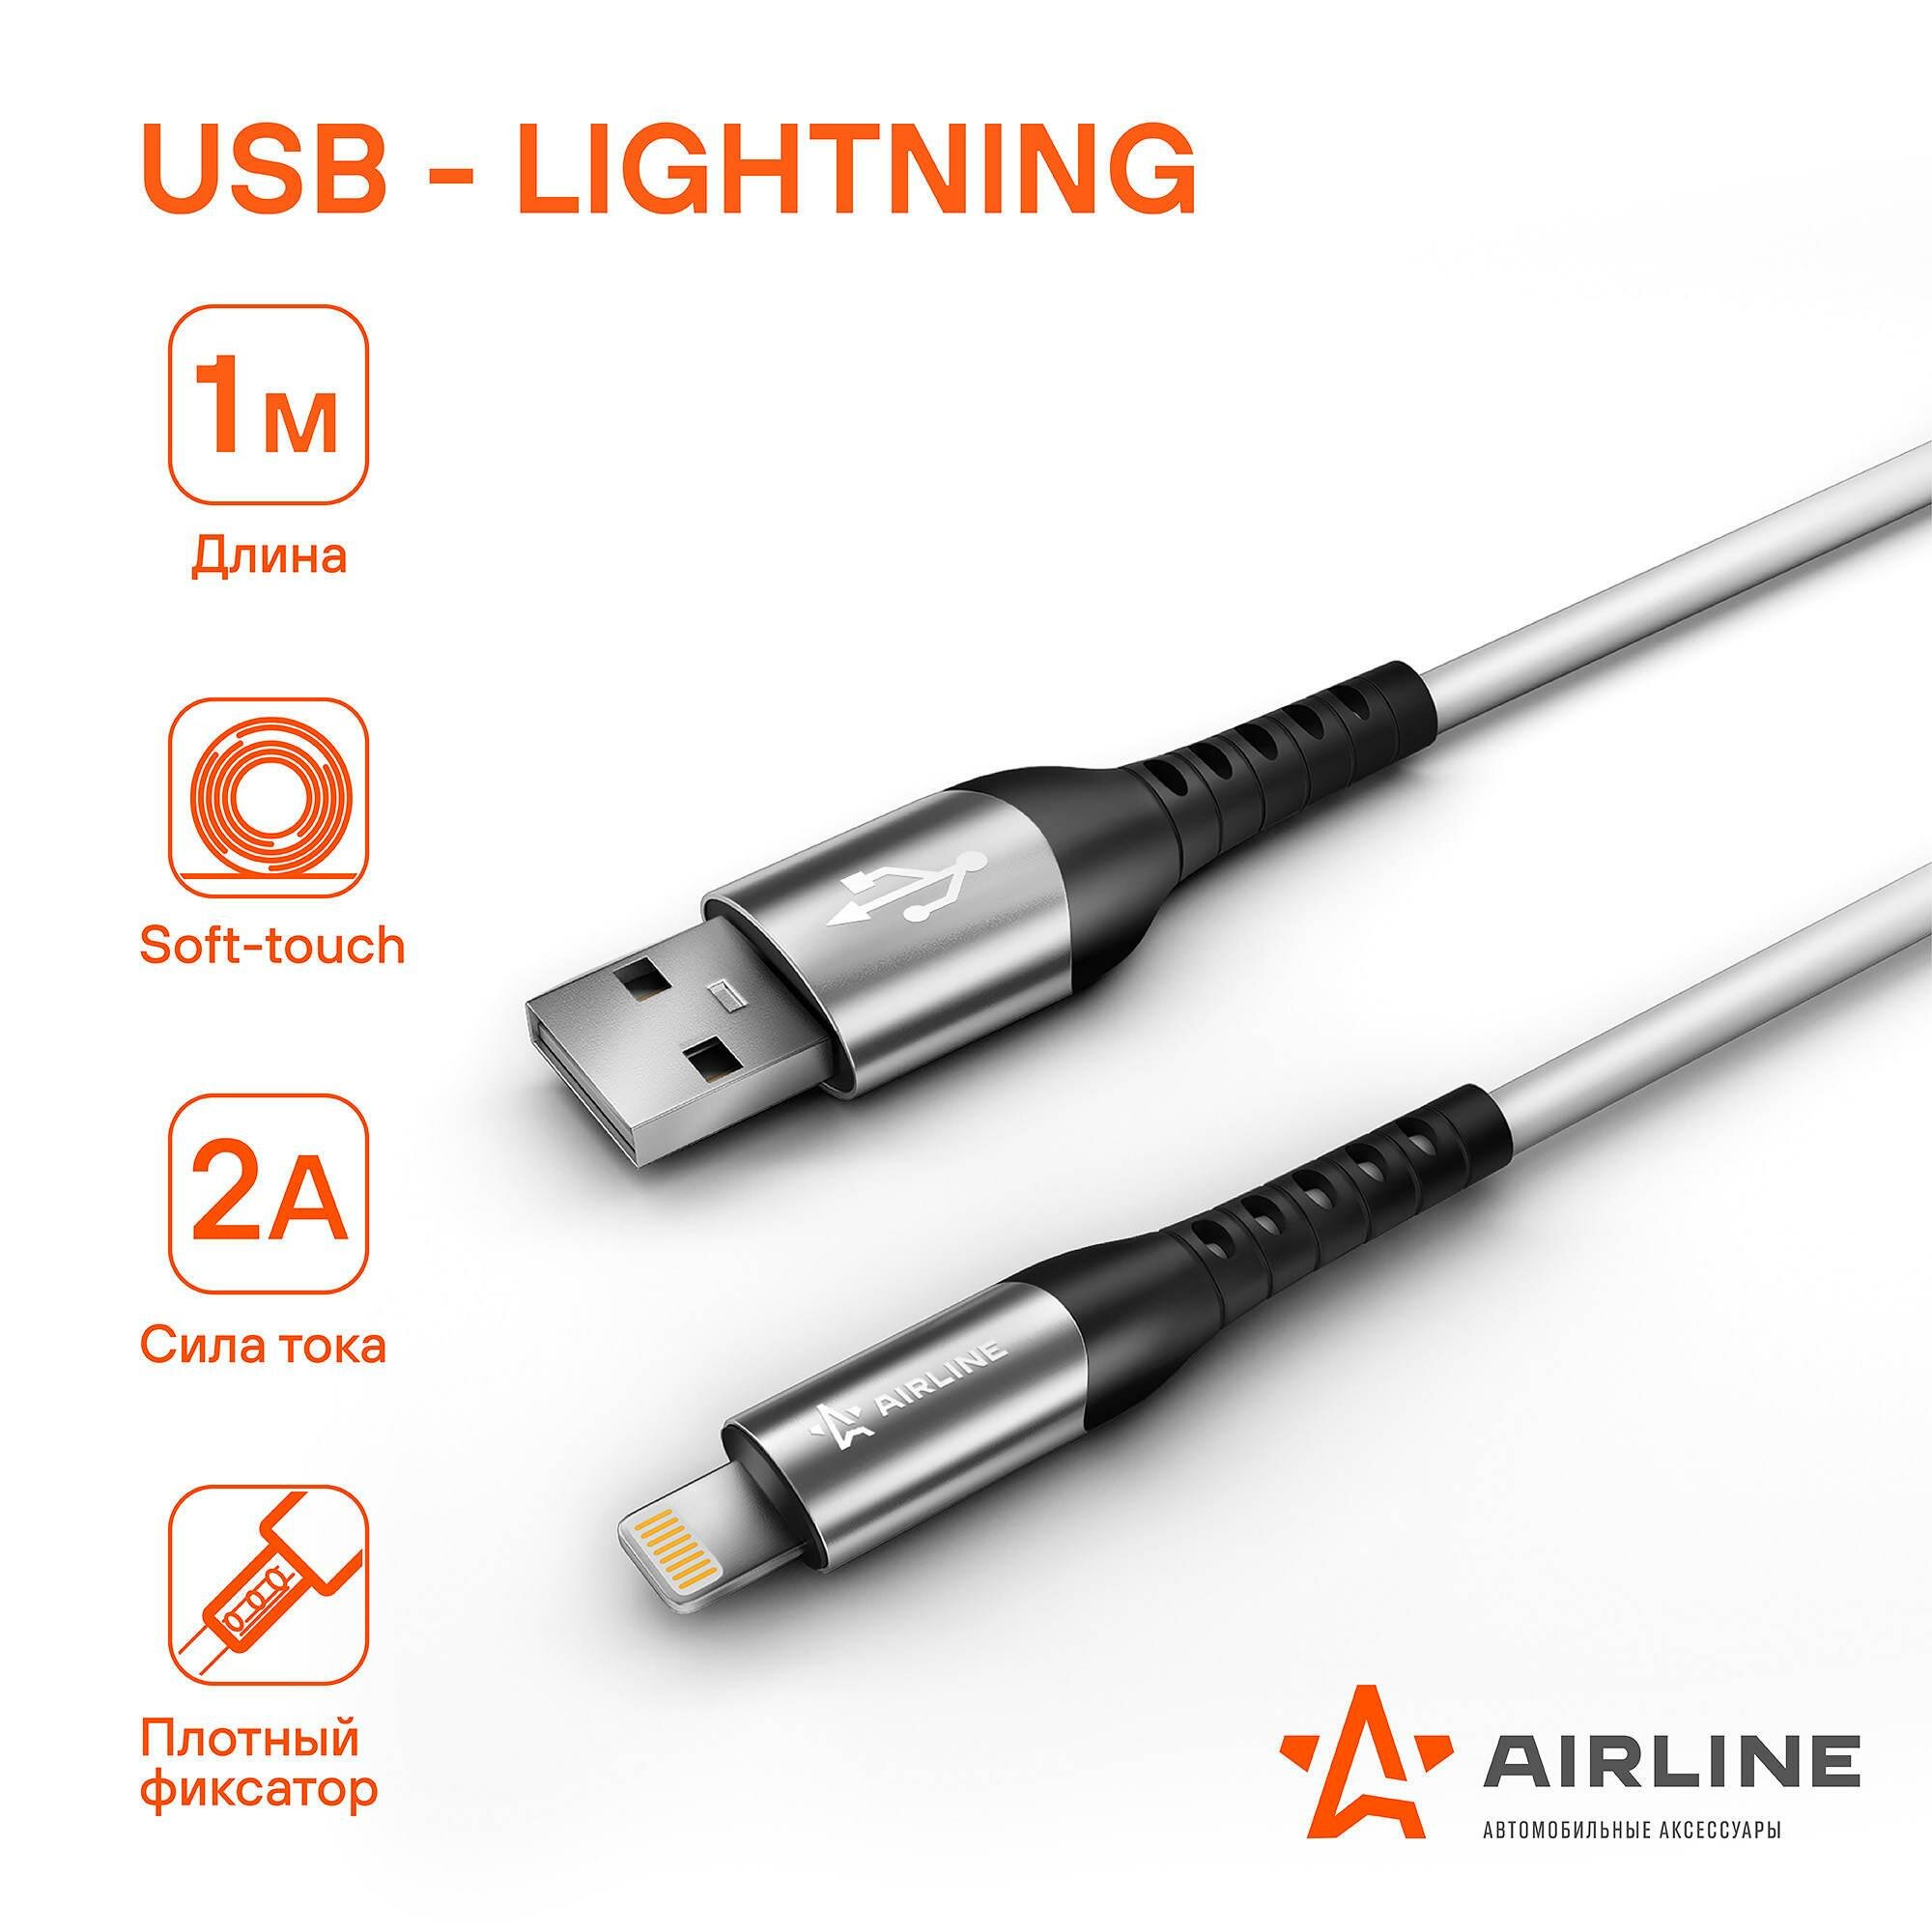 Зарядный датакабель USB - Lightning (Iphone/IPad) 1м (AIRLINE) ACH-C-43 - фото №4